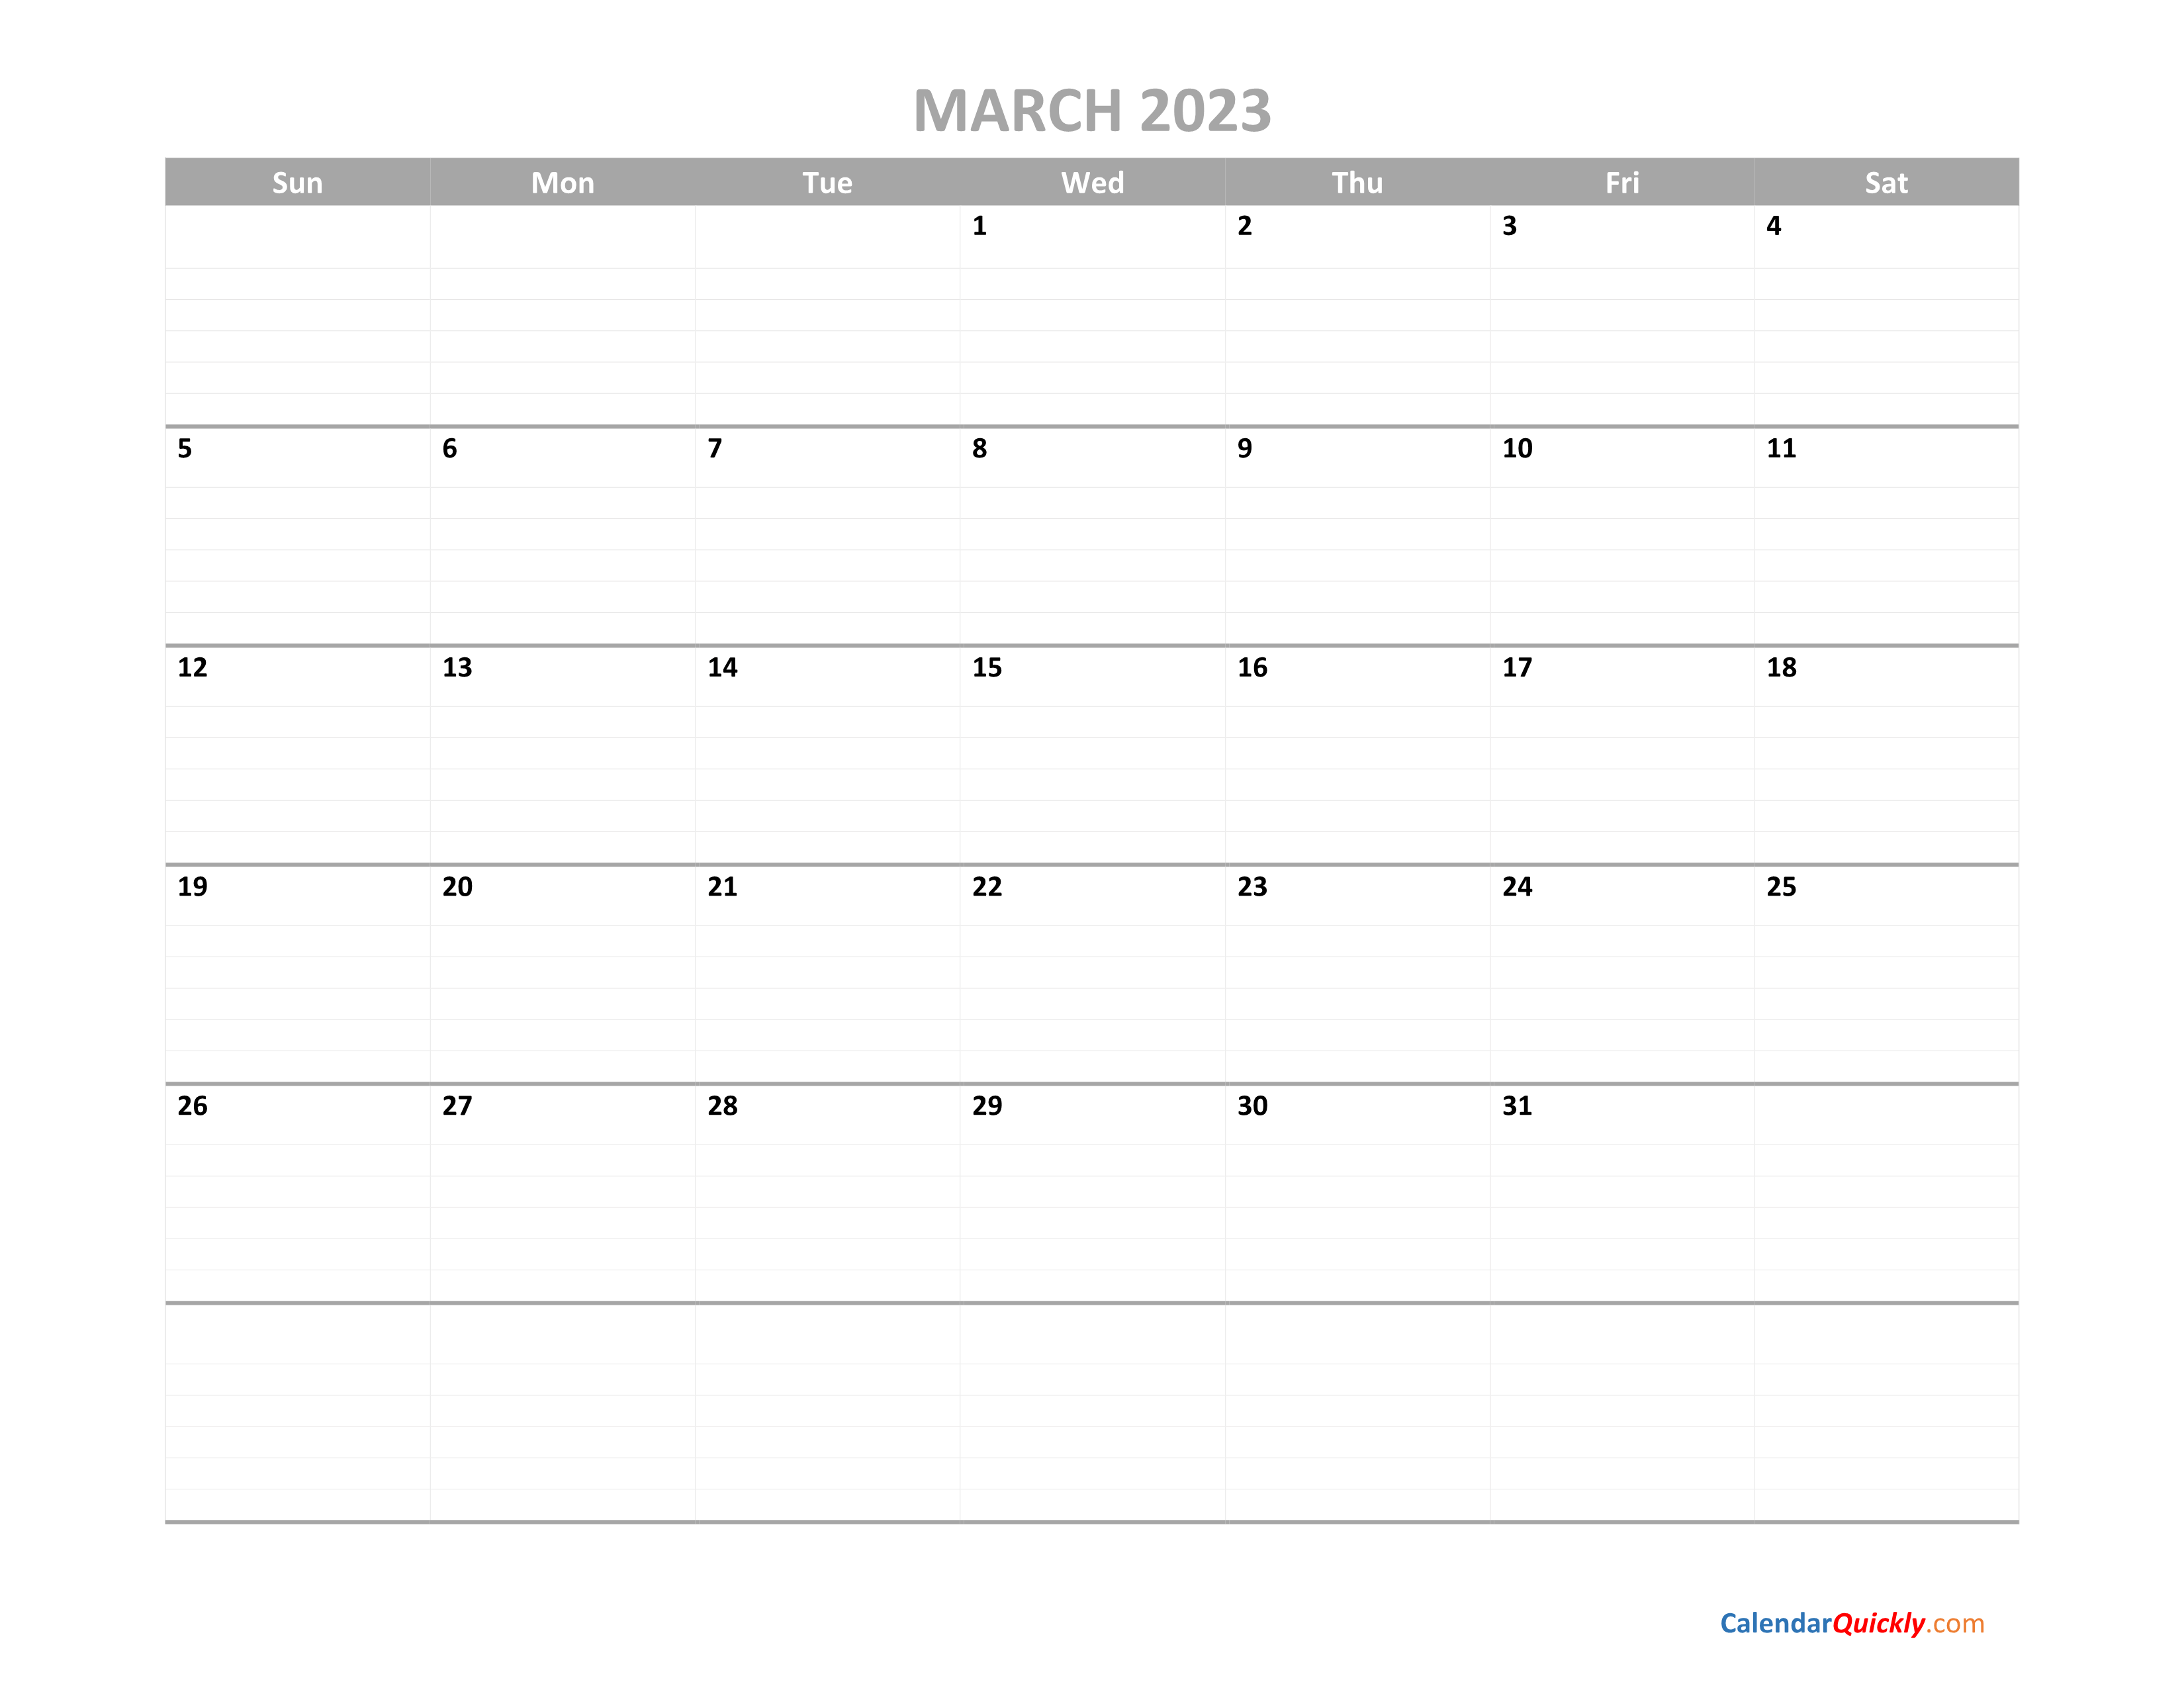 March Calendar 2023 Printable | Calendar Quickly